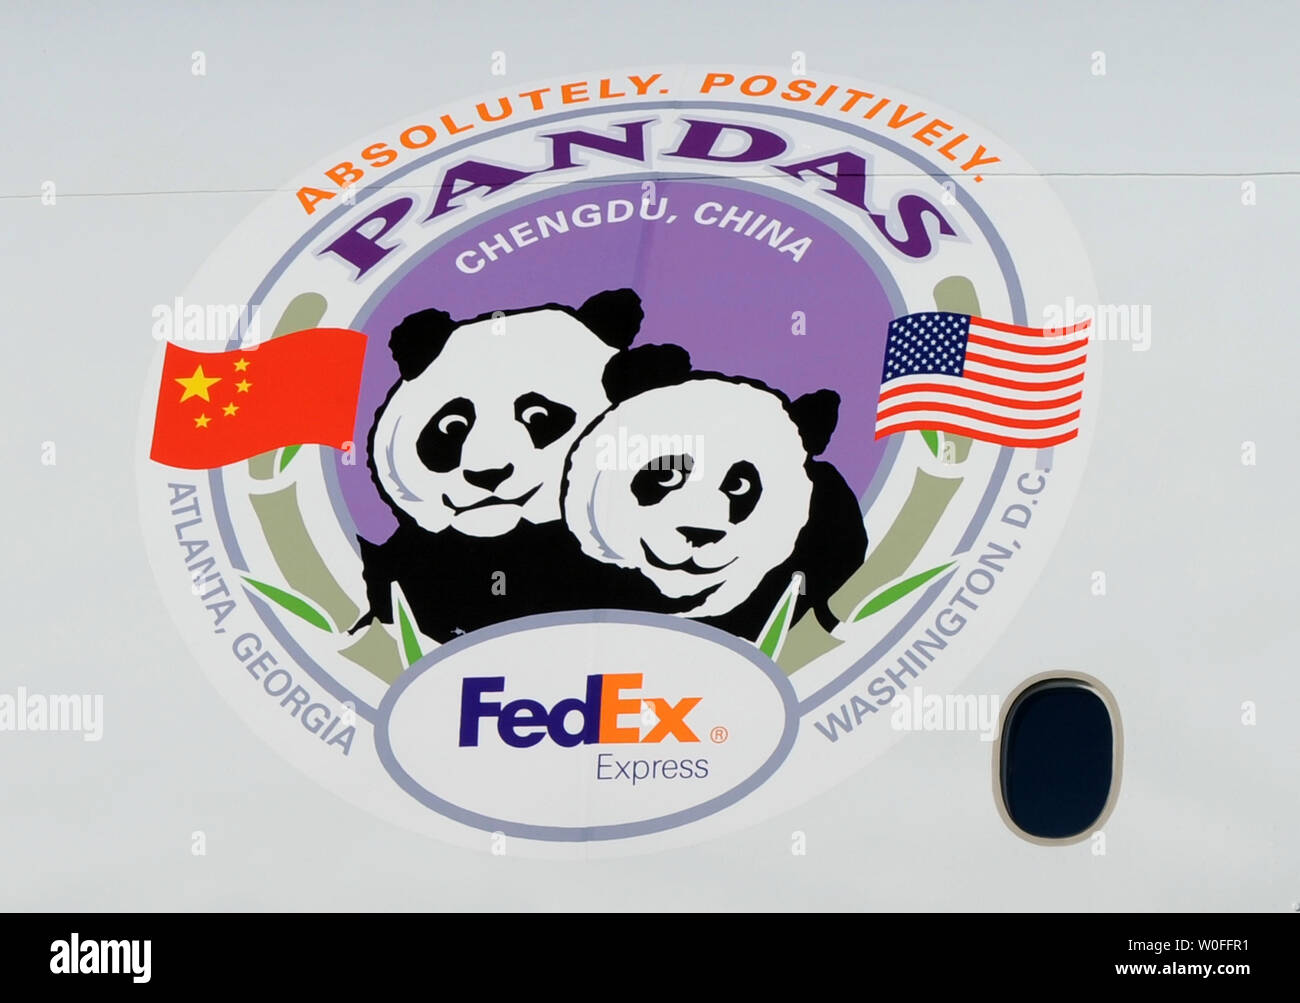 Un logo è visibile su un FedEx Express 777 cargo aereo che trasporterà il Tai Shan, un bambino di 4 anni maschio panda gigante, all'Aeroporto di Dulles a Dulles, Virginia il 4 febbraio 2010. Tai Shan e un altro di 3 anni panda femmina, Mei Lan, dallo Zoo di Atlanta, sarà trasportato sulla "FedEx Panda Express' a Chengdu, in Cina per entrare a far parte del paese allevamento e programma di conservazione. Entrambi i panda sono di proprietà del governo cinese e sono state affittate a gli Stati Uniti. UPI/Alexis C. Glenn. Foto Stock